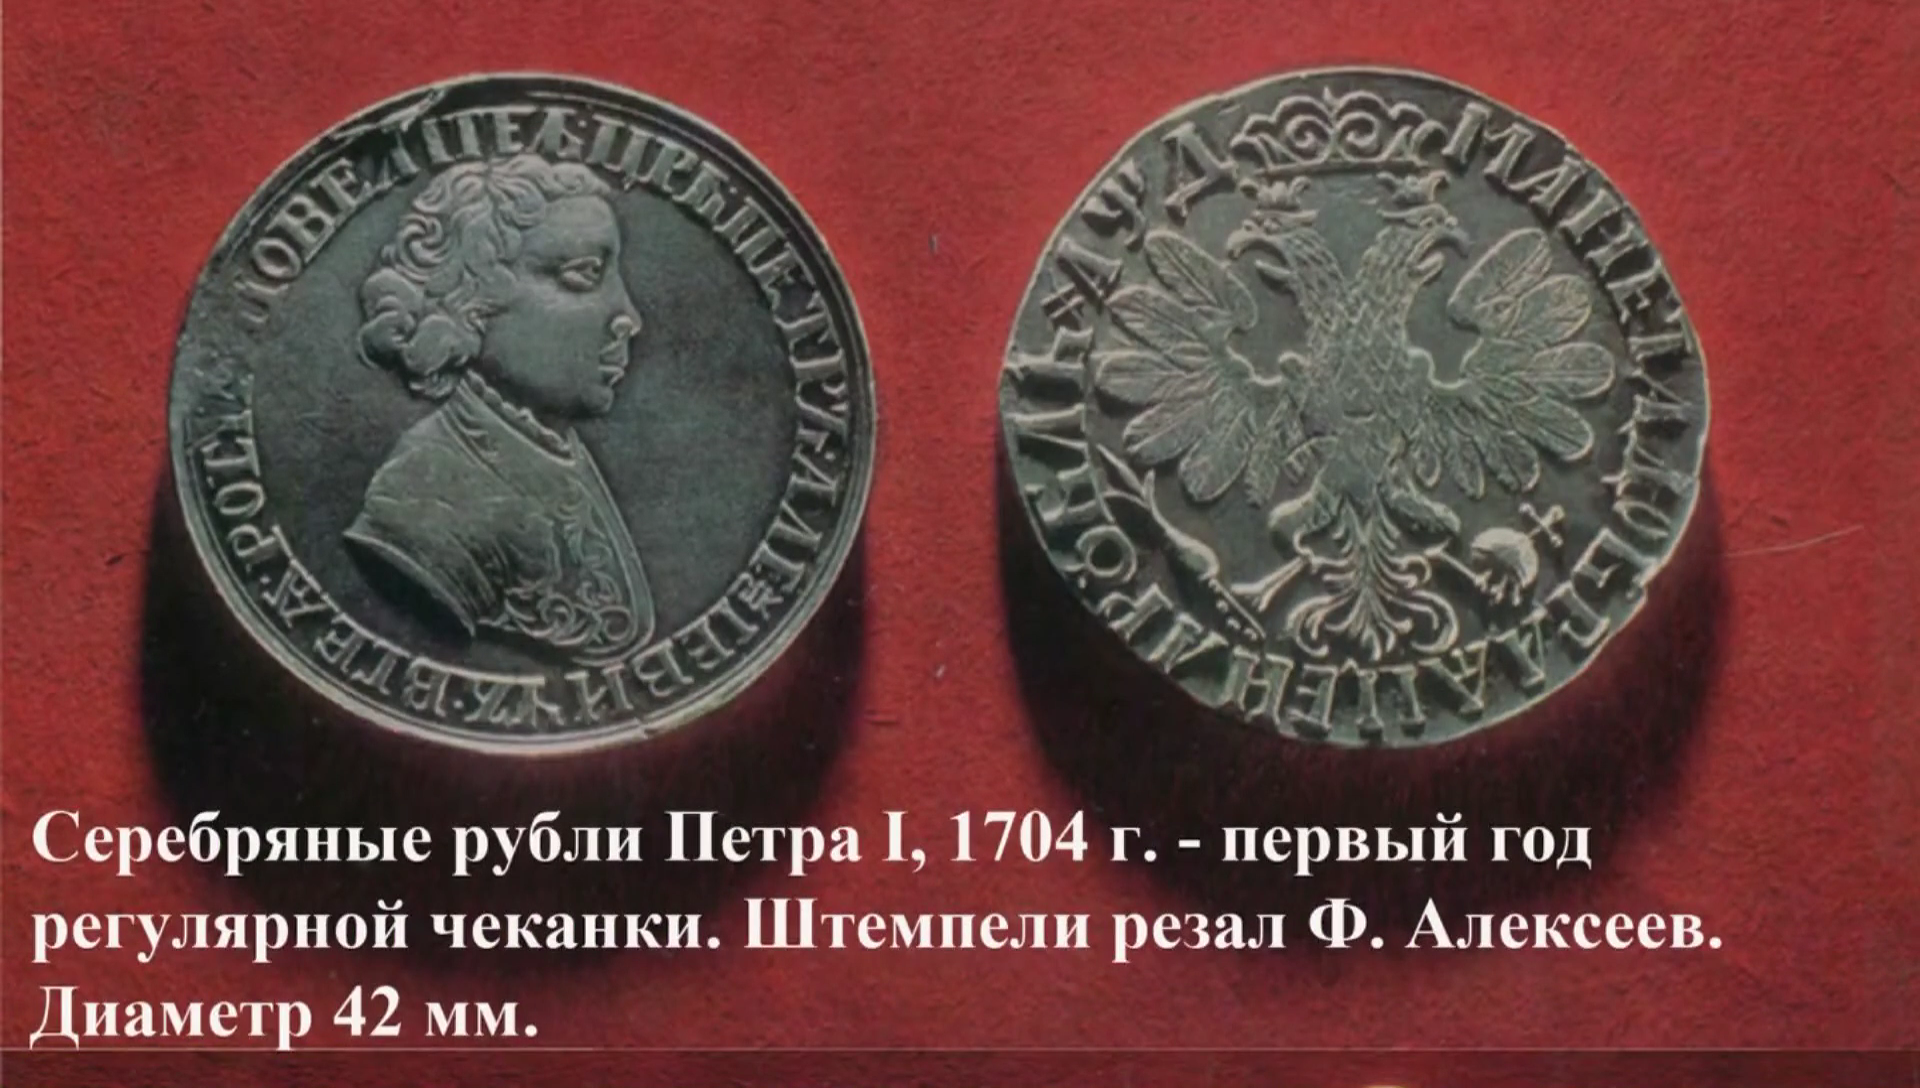 Первый серебряный рубль. Серебряный рубль Петра 1 1704. Монета Петра 1 1704 года 1 рубль. 1704 Год первый рубль Петра i.